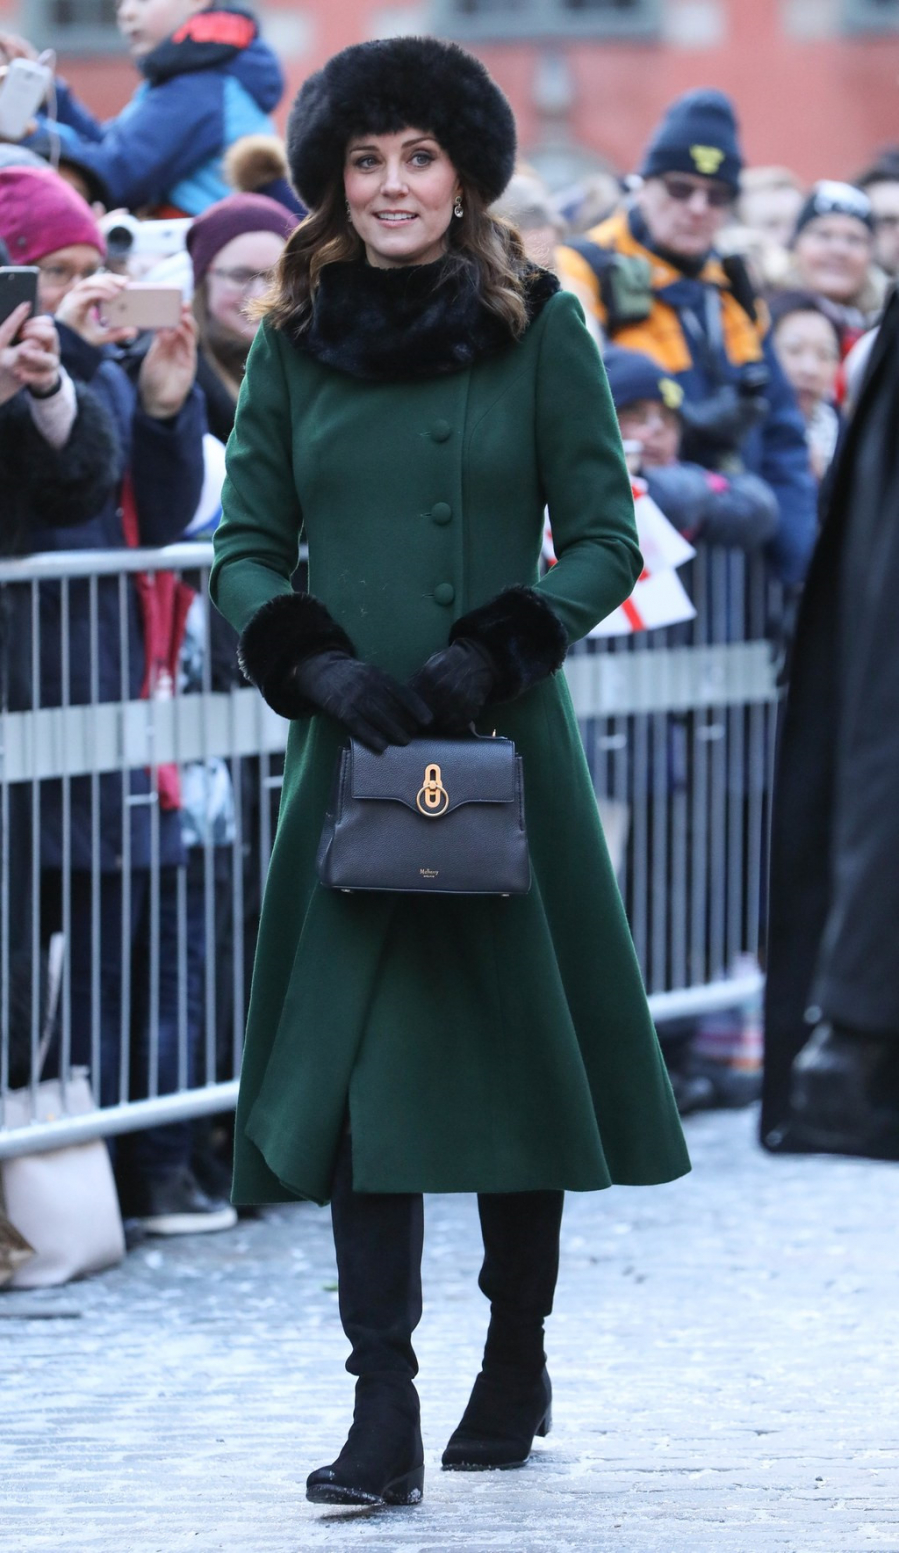 Công nương Kate diện đầm dáng măng tô màu xanh rêu của thương hiệu Mulberry được kết hợp ăn ý với màu xanh sẫm của túi xách Stuart Weitzman . Từ mũ lông cáo, găng tay đến đôi boots của công nương Kate cũng đều đến từ thương hiệu đắt tiền. 